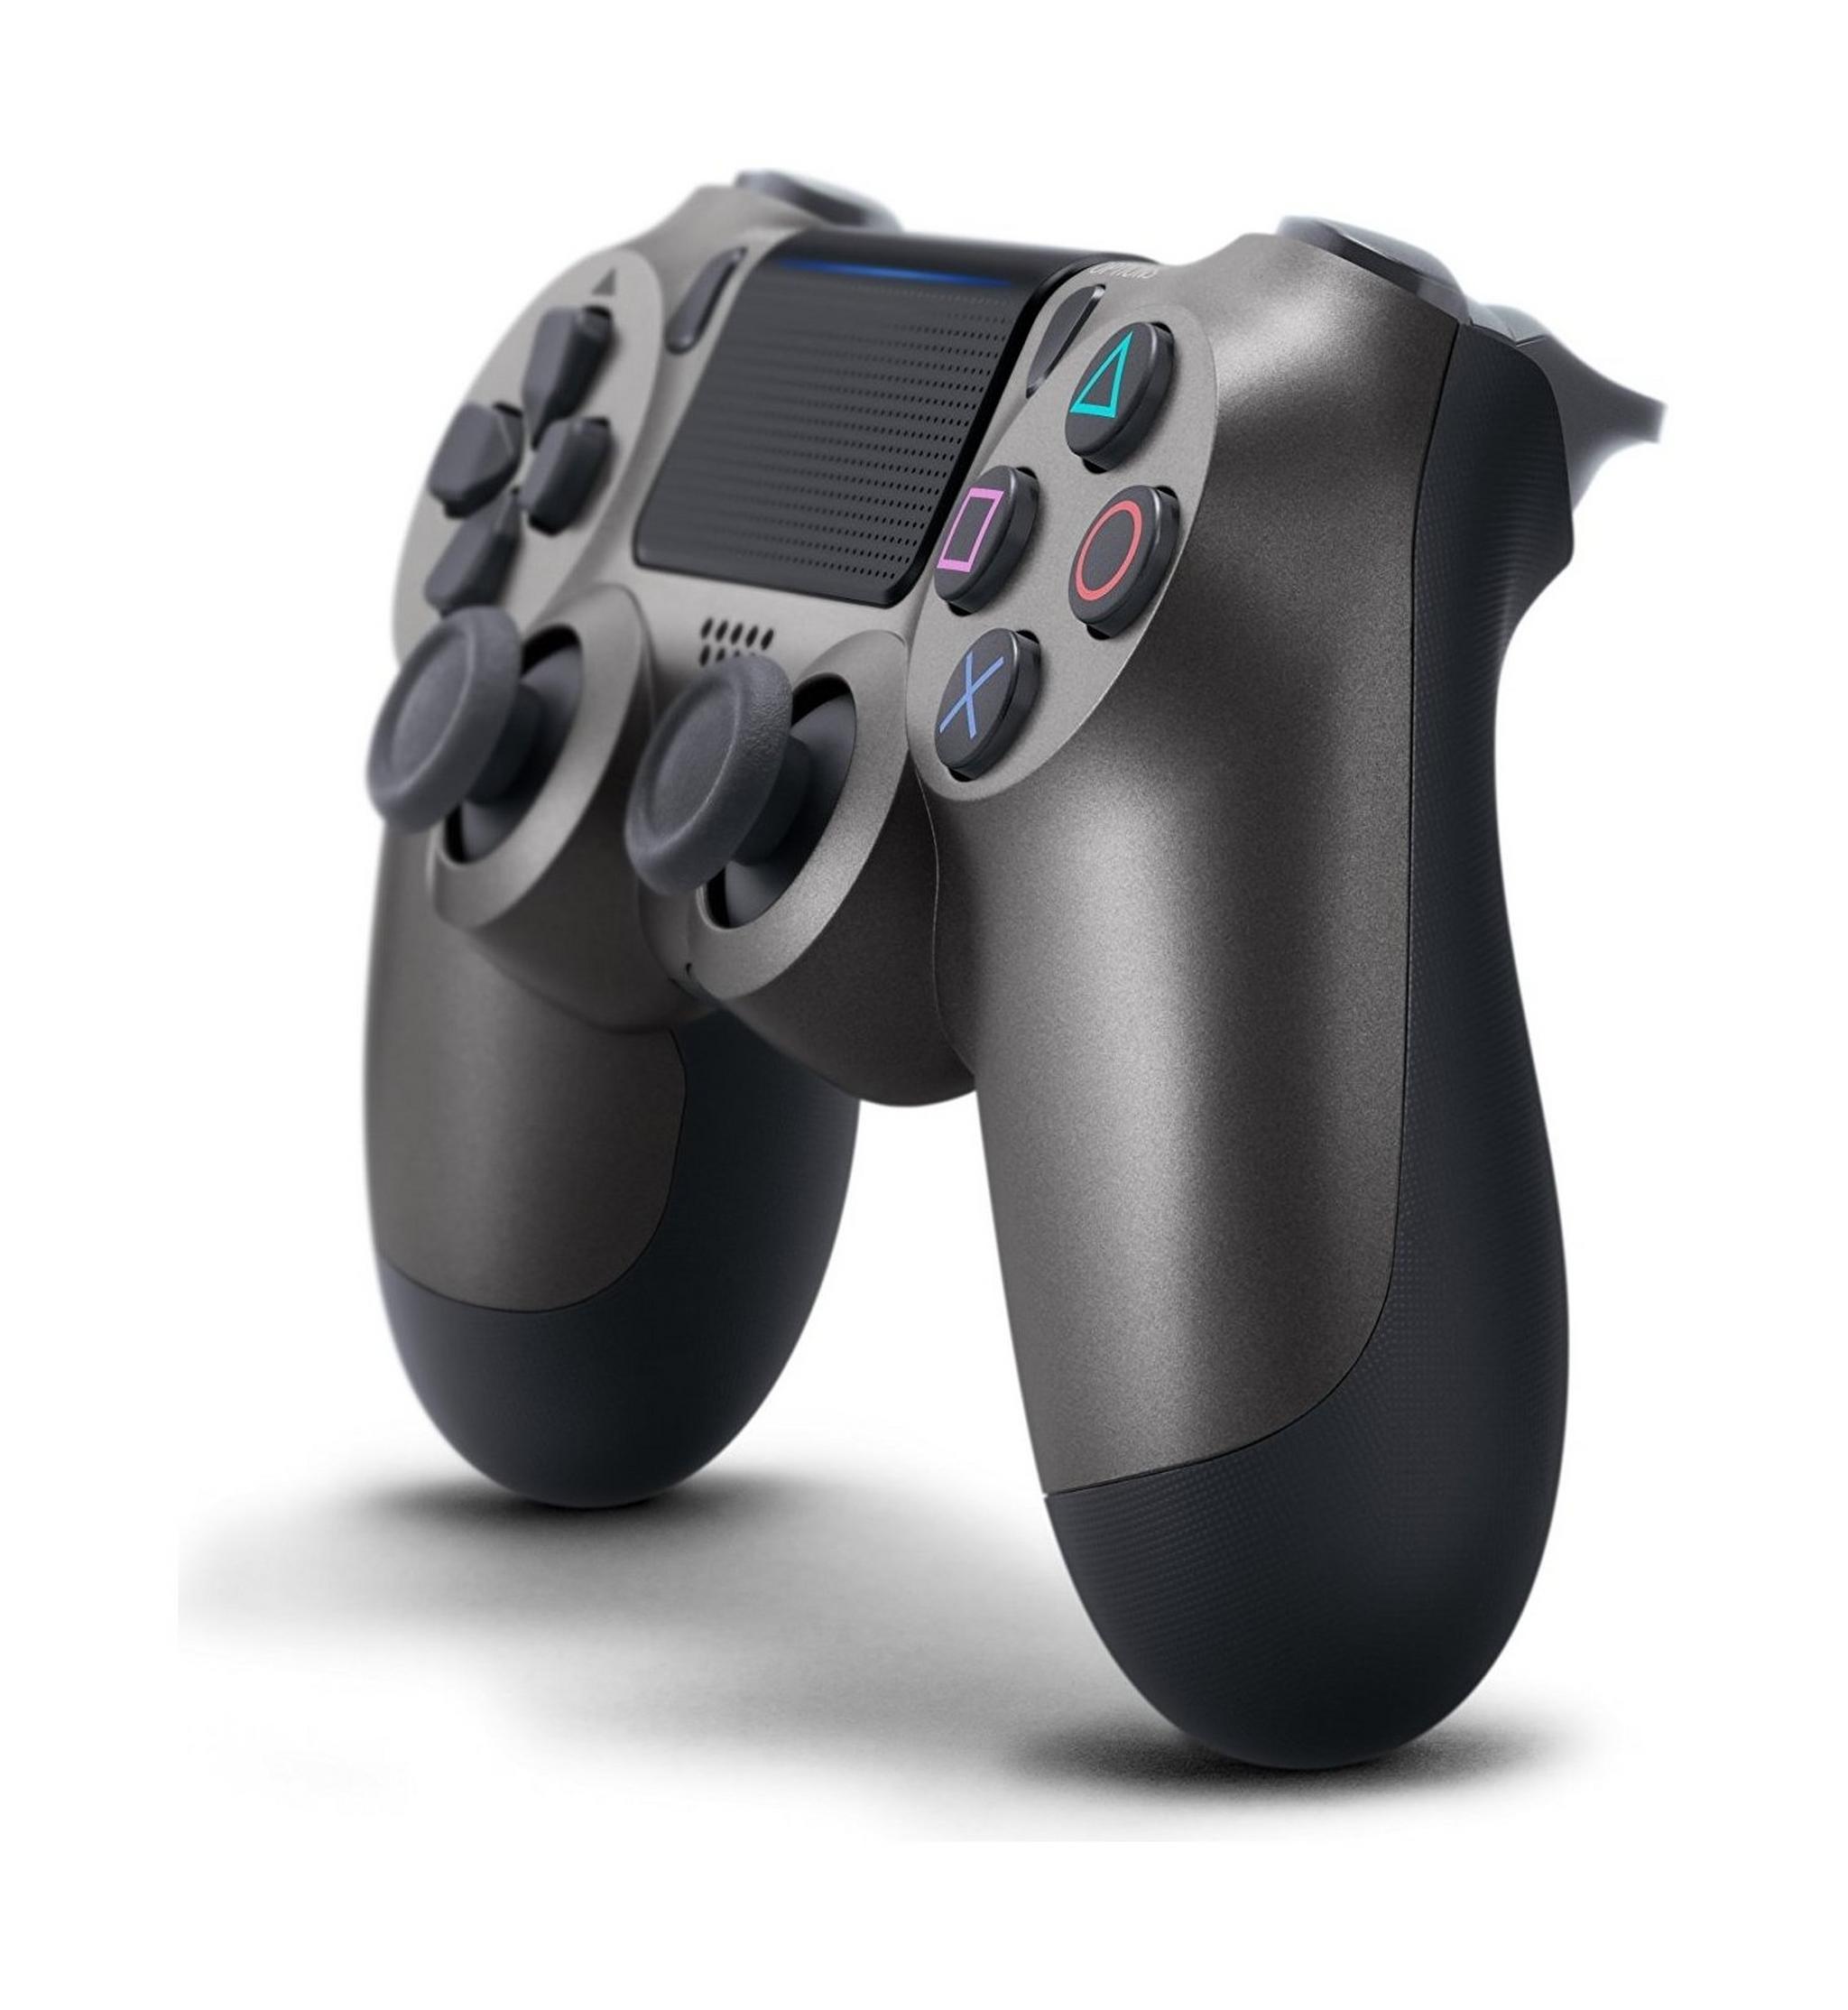 Sony PS4 Dual shock 4 Wireless Controller - Steel Black